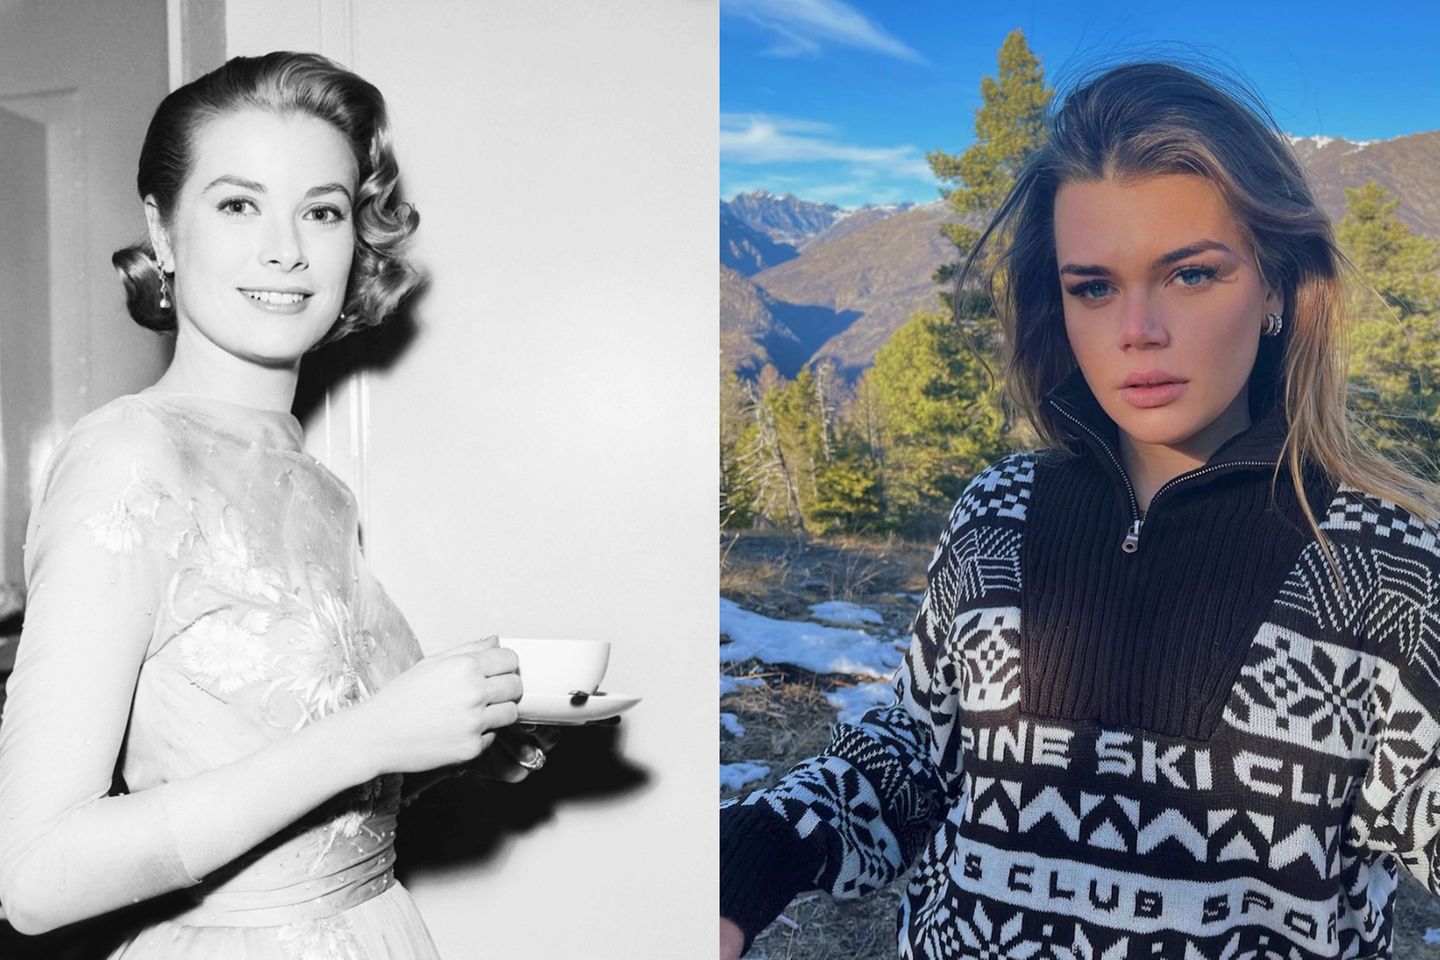 Die Ähnlichkeit zwischen Camille Gottlieb und ihrer berühmten Großmutter Grace Kelly ist nicht zu übersehen